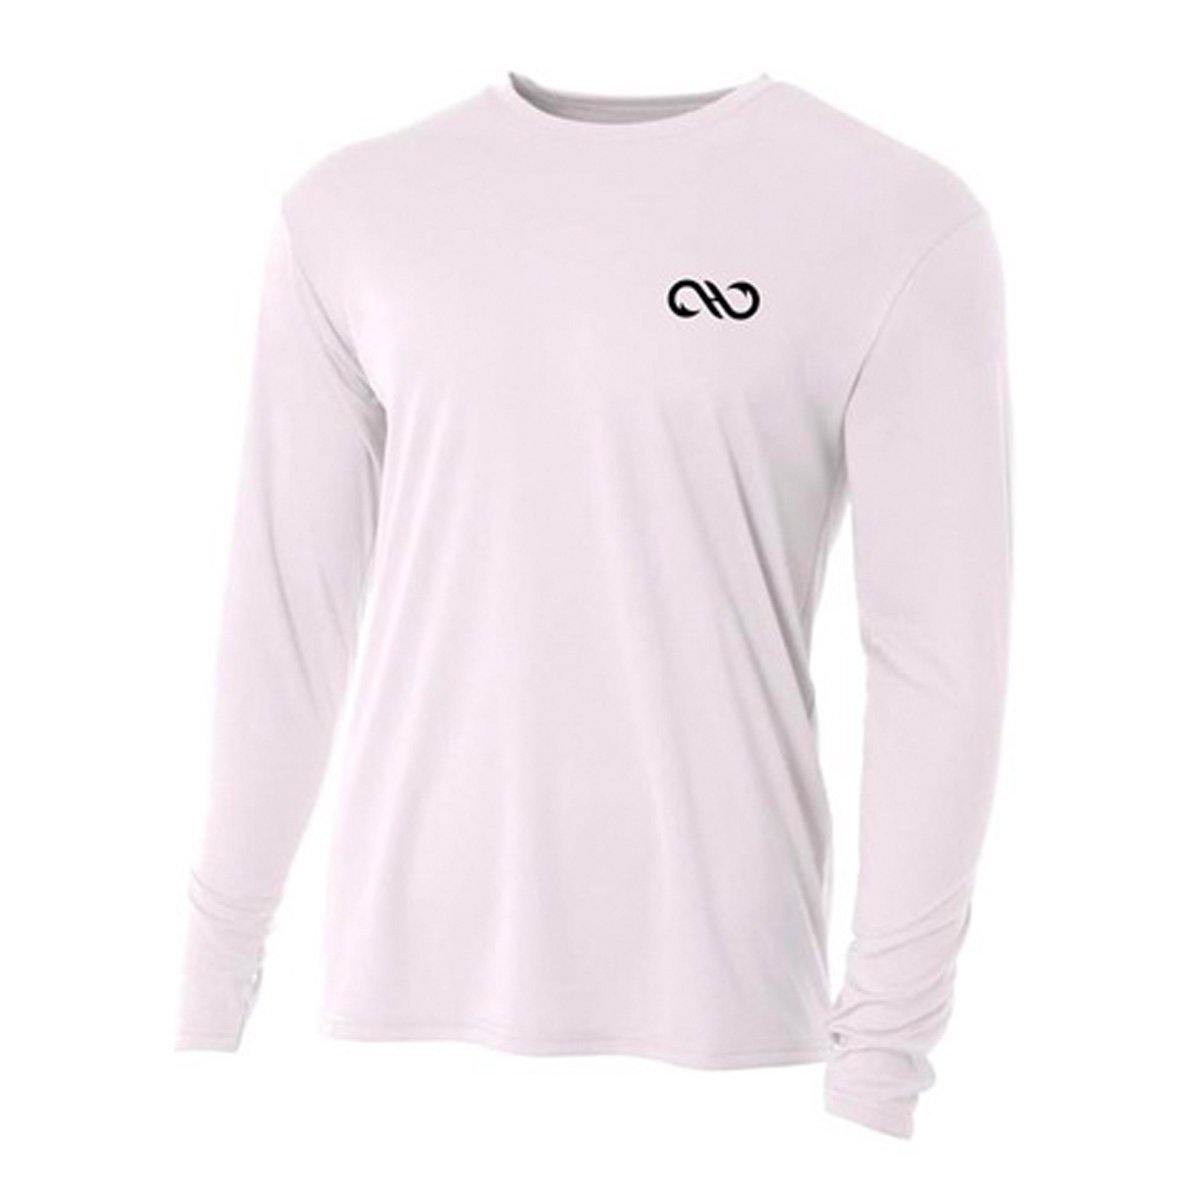 Buy Performance Fishing Shirts, Tarpon Fishing Shirts Design 2x / Grey